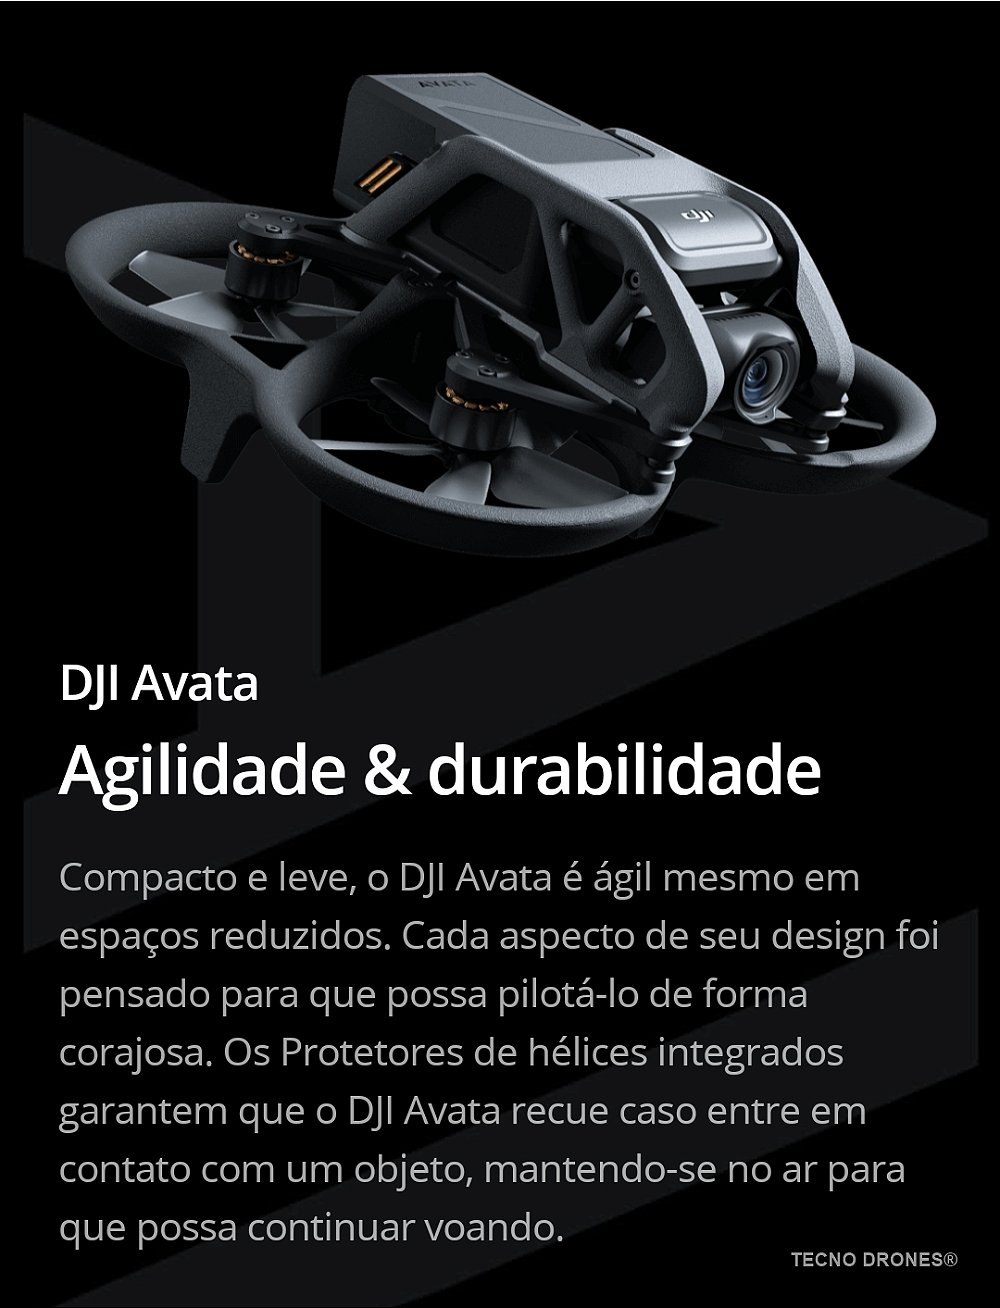 Drone DJI Avata Pro View Combo